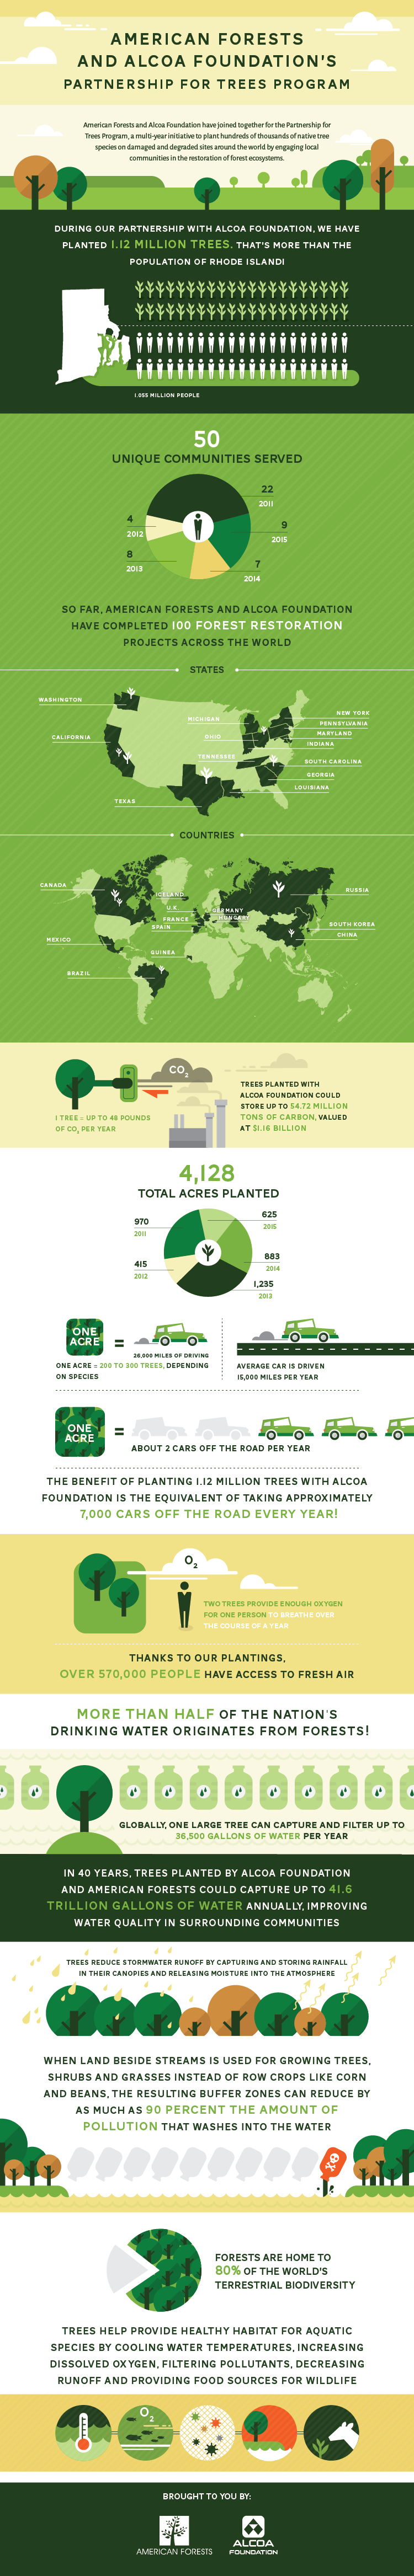 Alcoa-AF Partnership Infographic